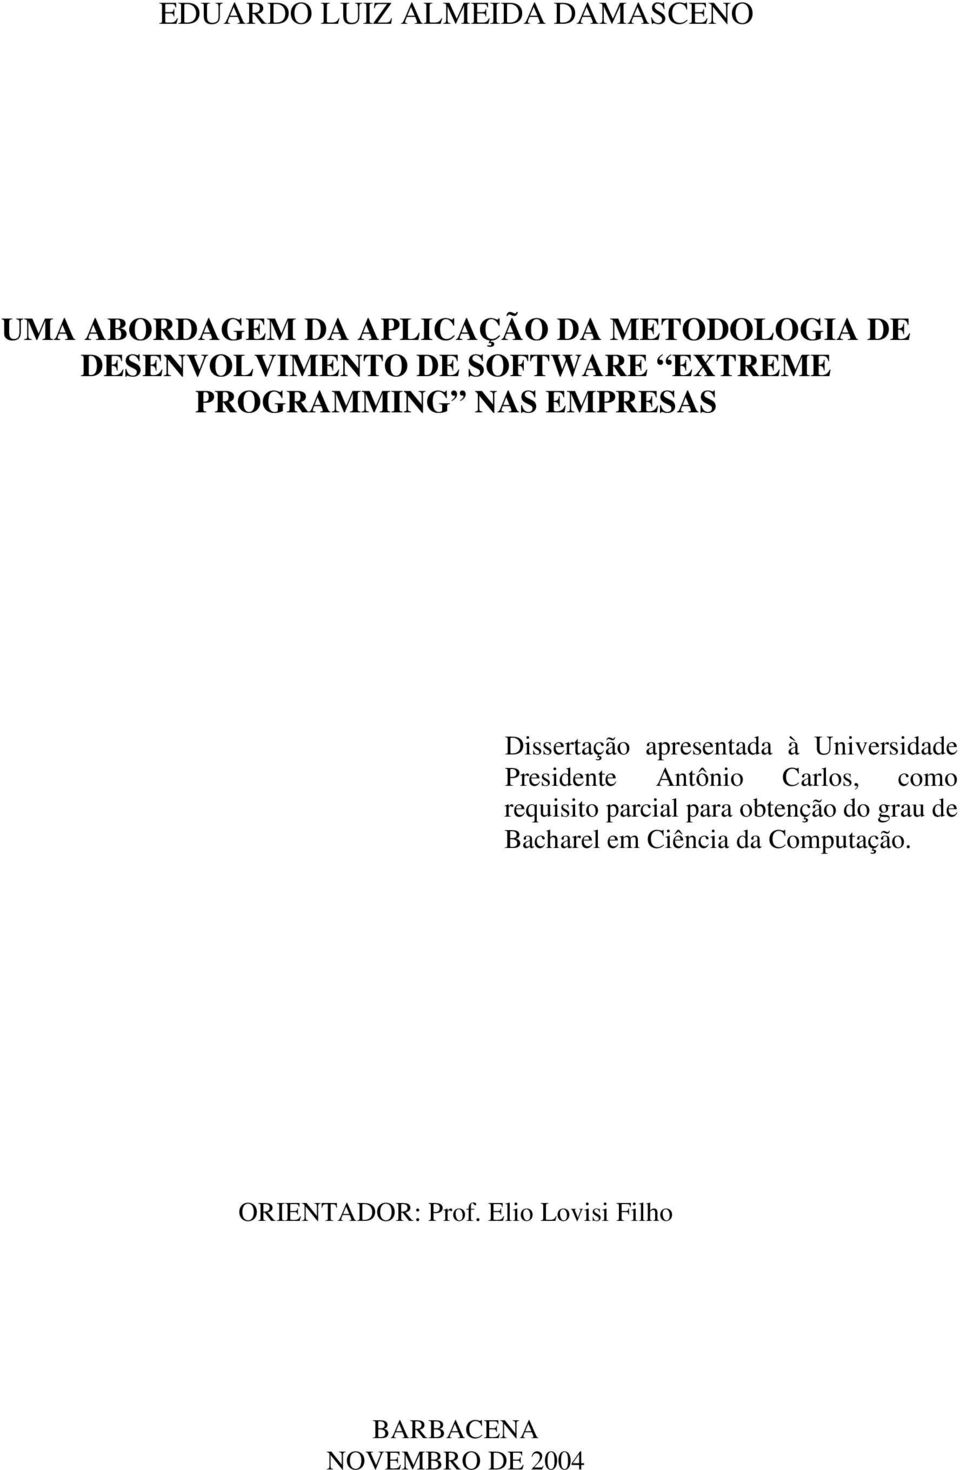 Universidade Presidente Antônio Carlos, como requisito parcial para obtenção do grau